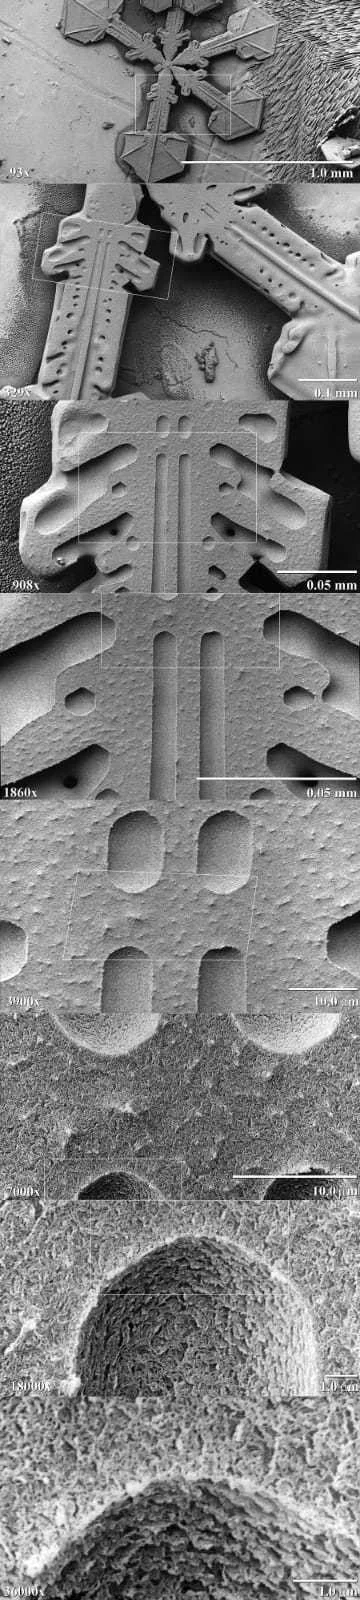 A.....1 - Płatek śniegu pod mikroskopem elektronowym.

#ciekawostki